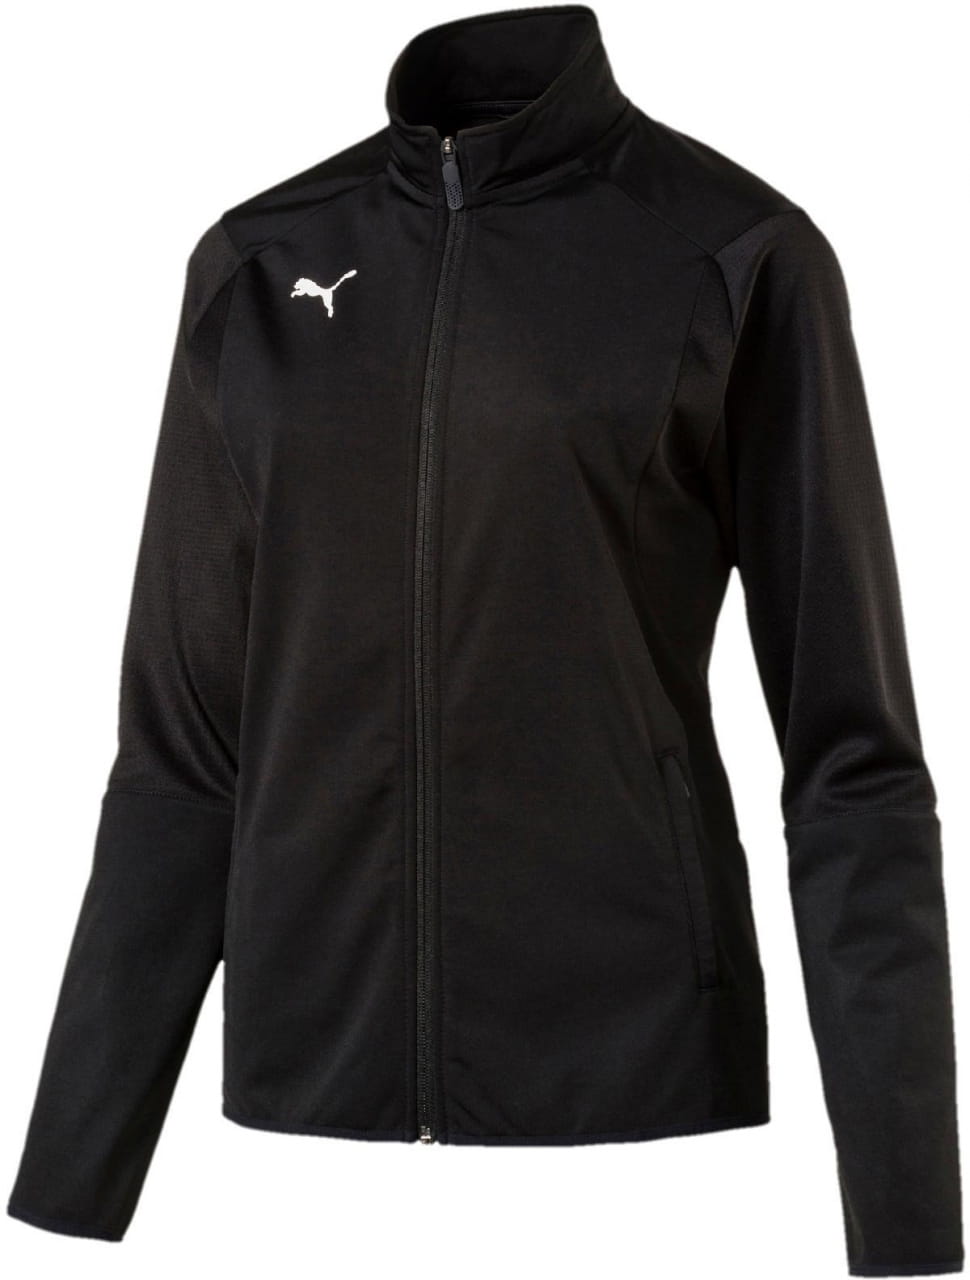 Dámská sportovní bunda Puma Liga Training Jacket W